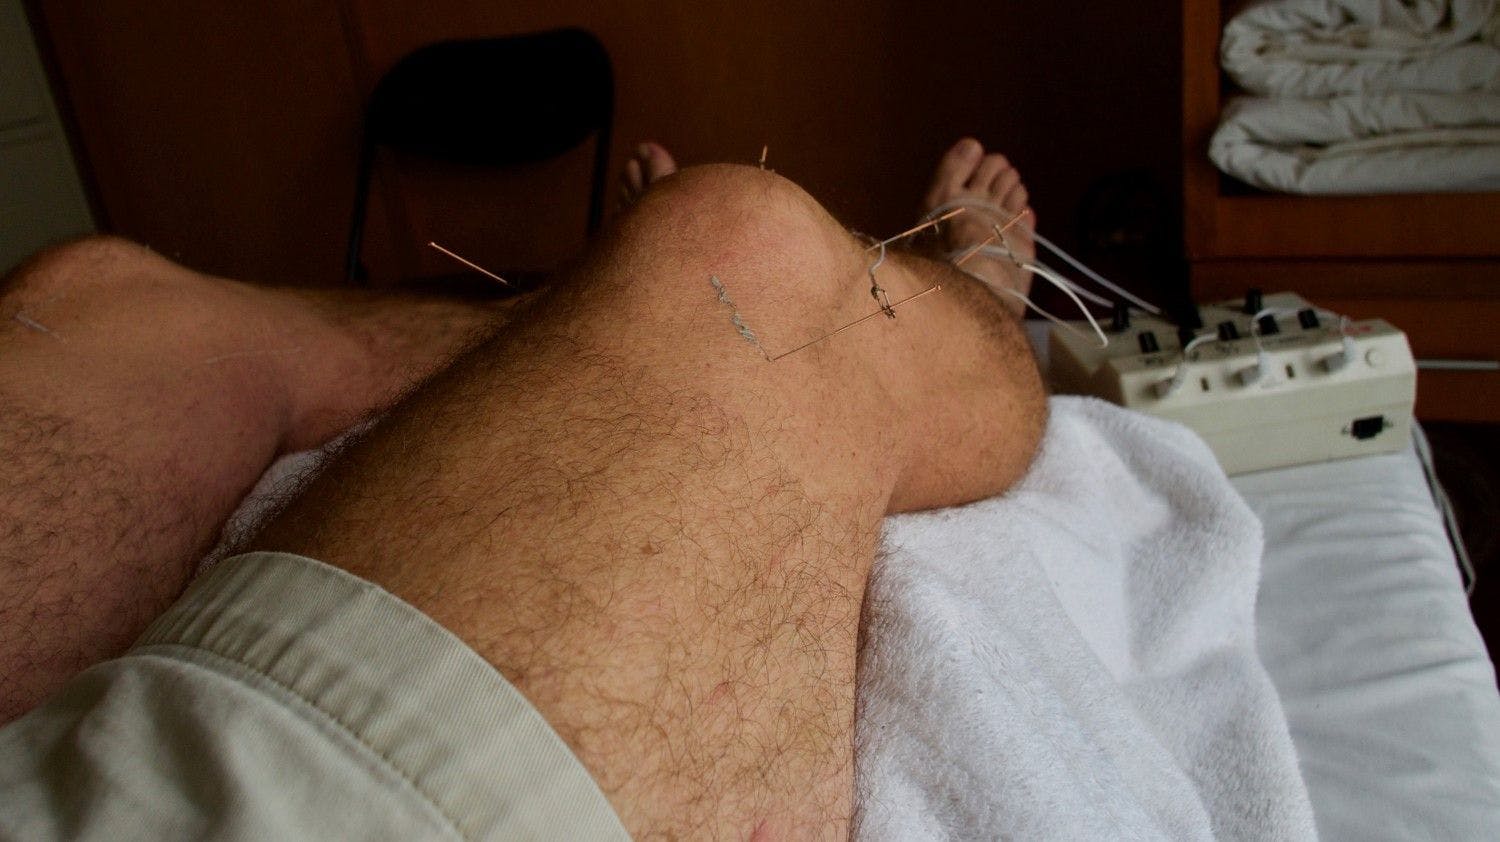 Acupuncture on arthritic knees (©Steve, AdobeStock)